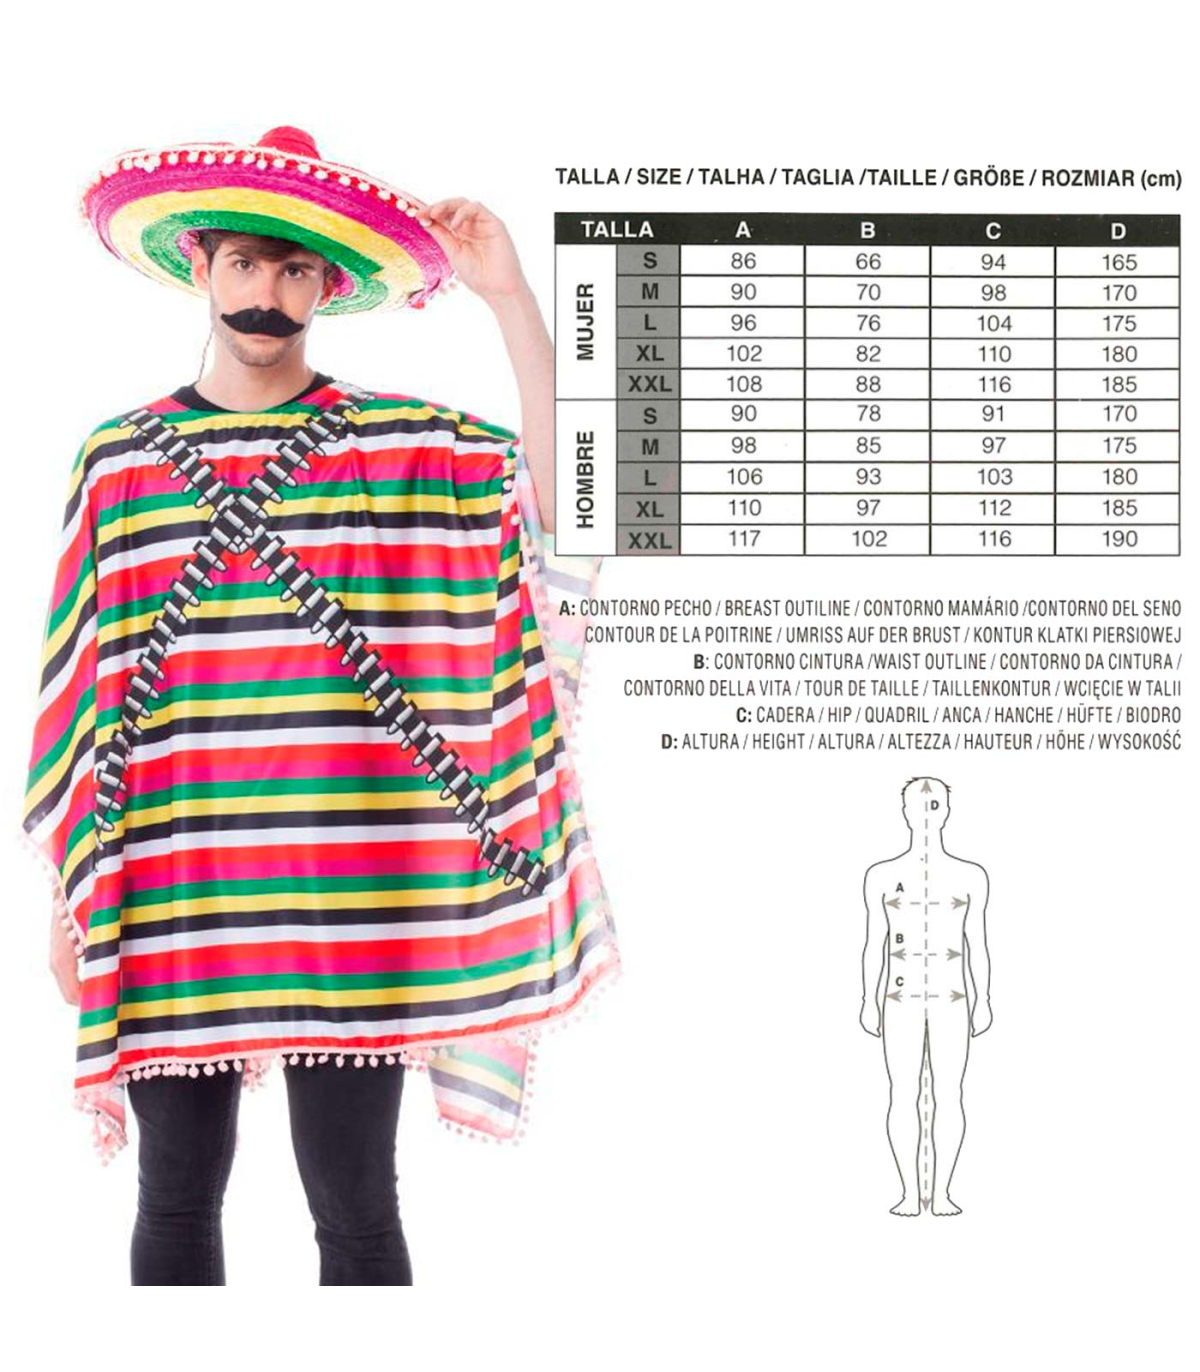 Tradineur - Disfraz de forzudo para adulto, poliéster, incluye camisa,  torso musculoso, atuendo de carnaval, Halloween, cosplay